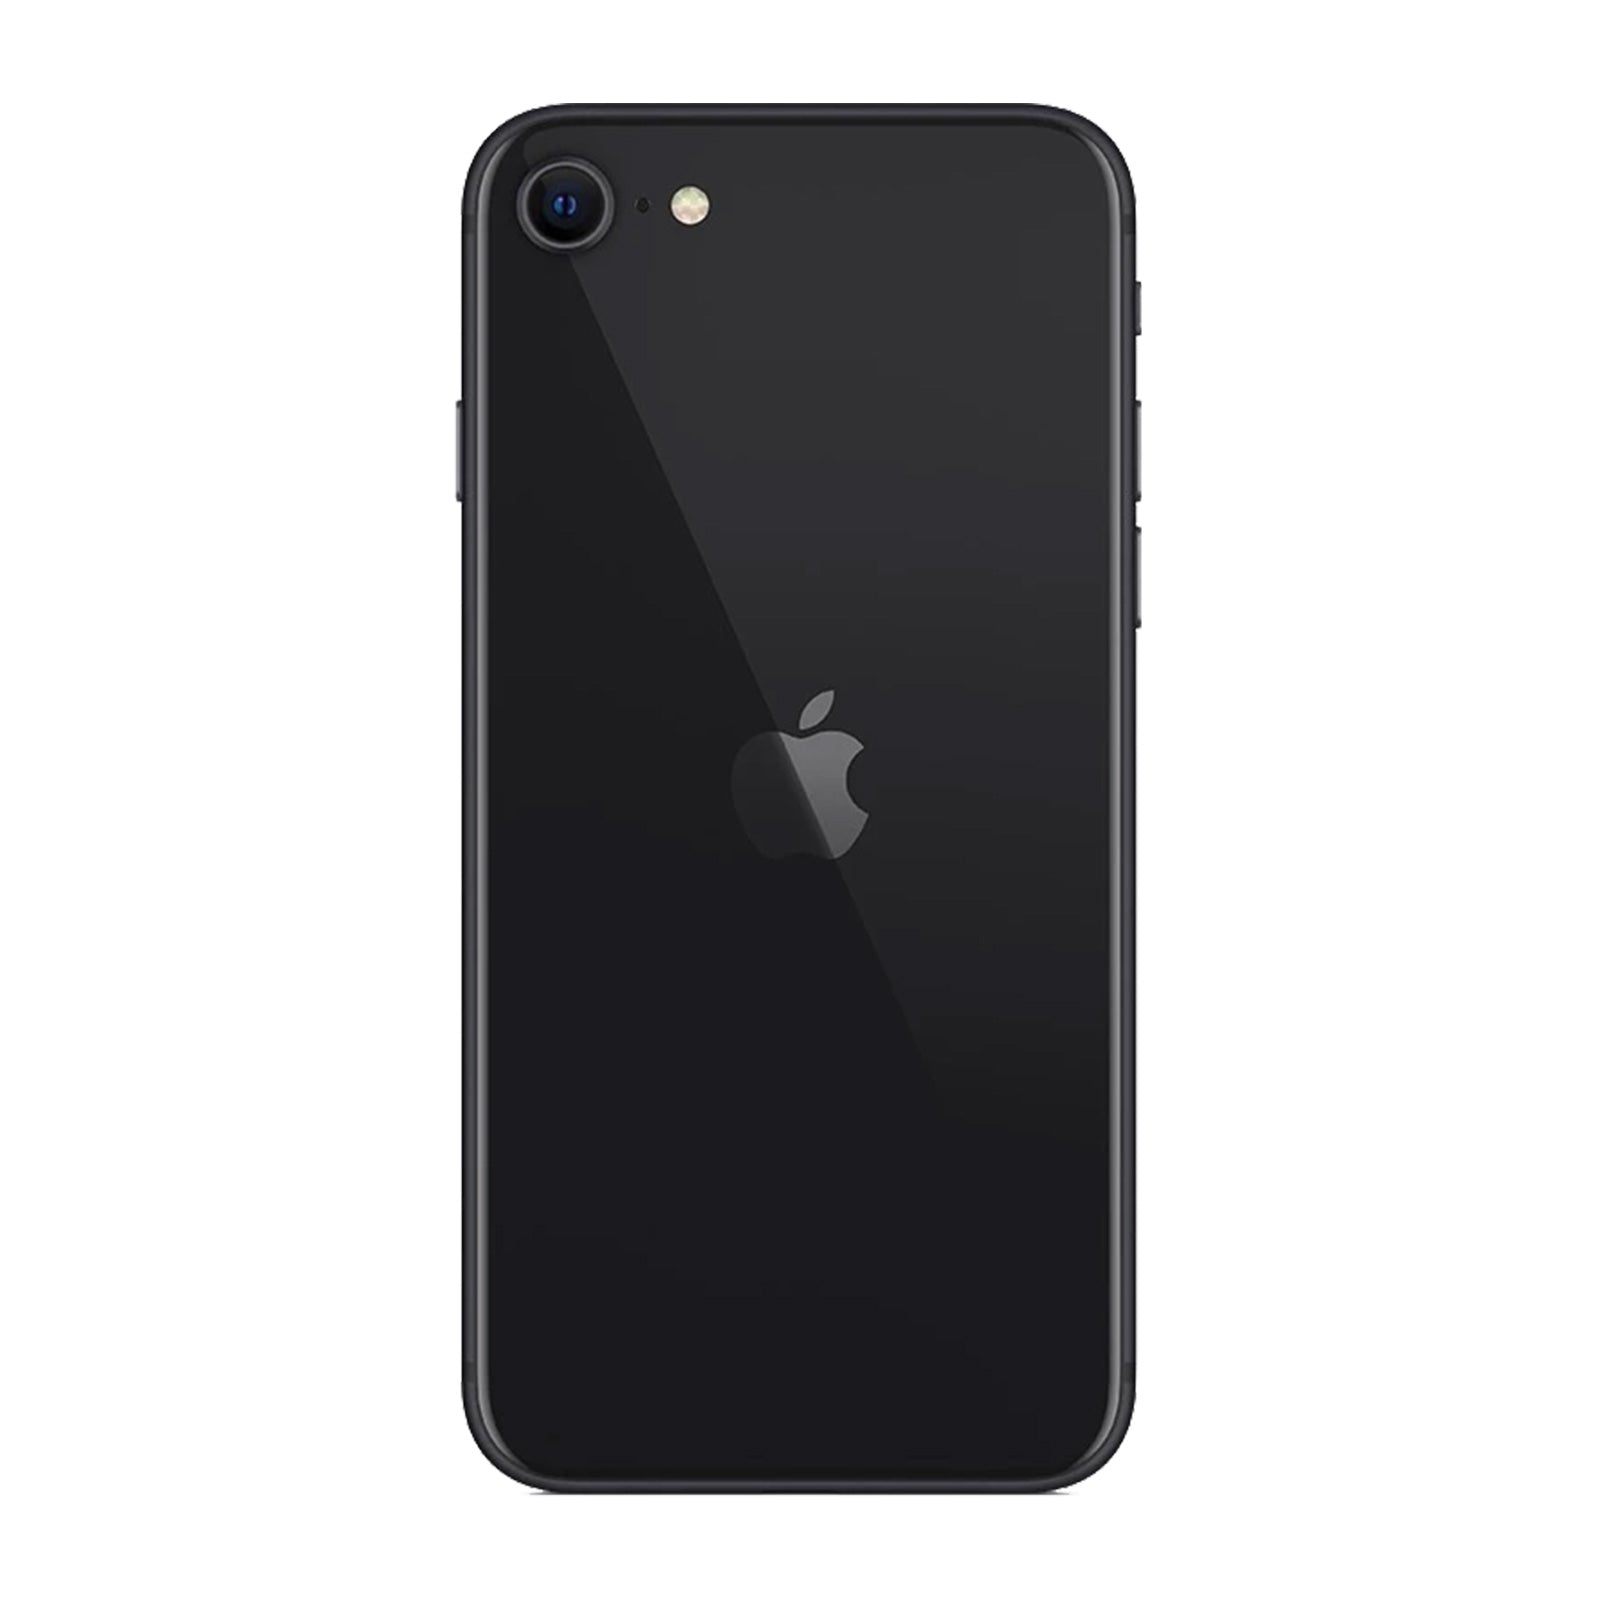 Apple iPhone SE 2nd Gen 128GB Black Good T-Mobile